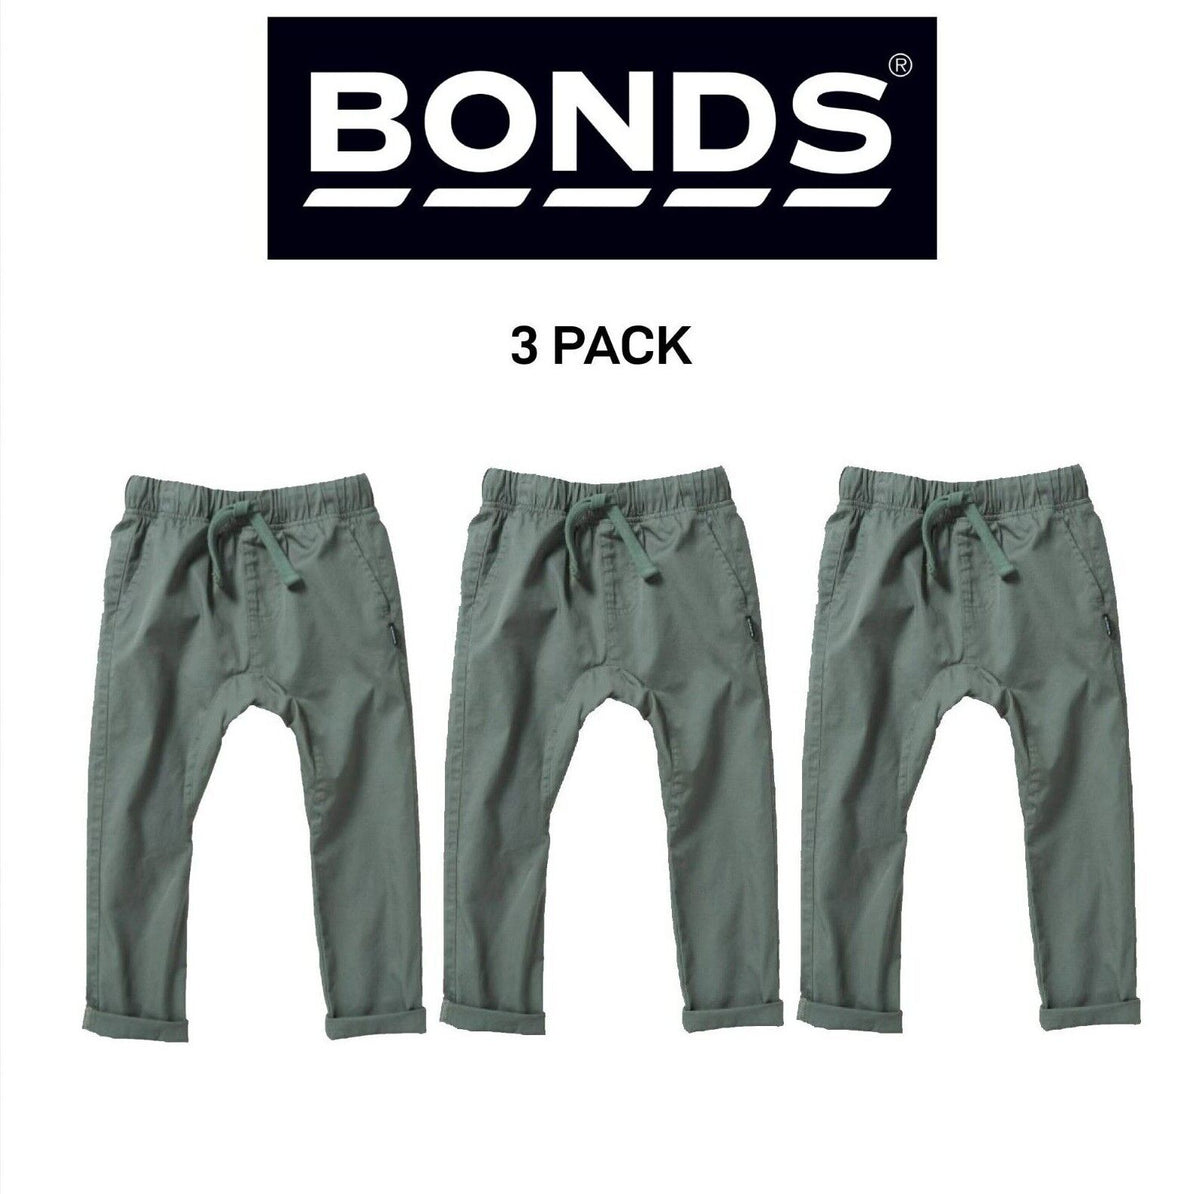 Bonds Kids Next Gen Cargo Pants Super Soft Waistband with Pockets 3 Pack KY9CK